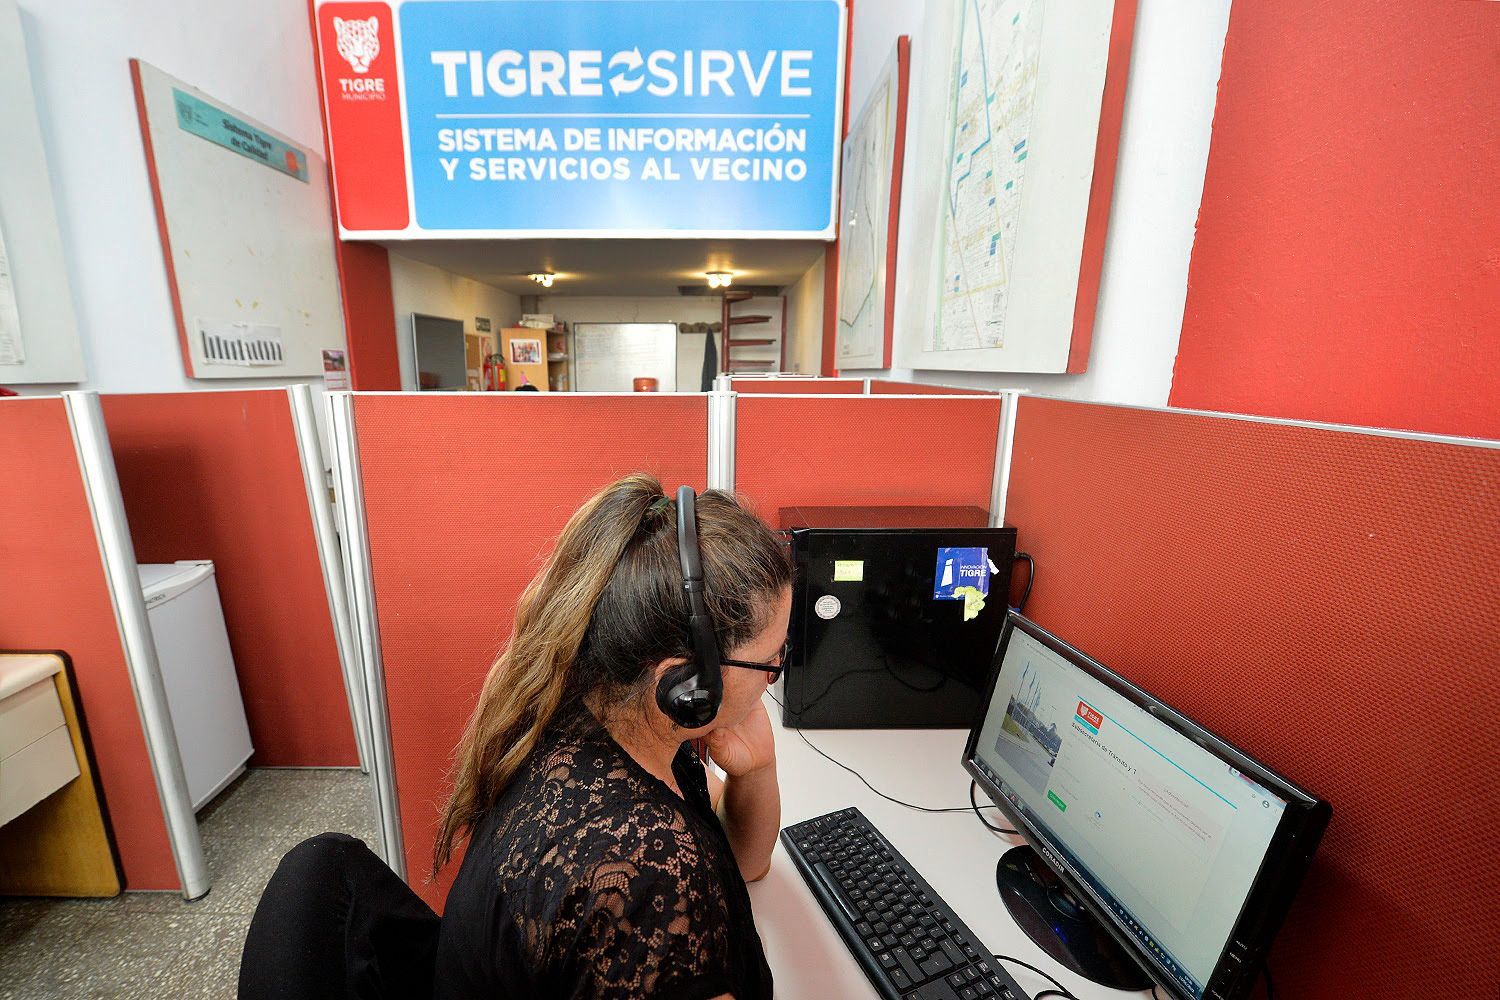 Más de 100 mil personas fueron atendidas a través del sistema "Tigre sirve" en 2020